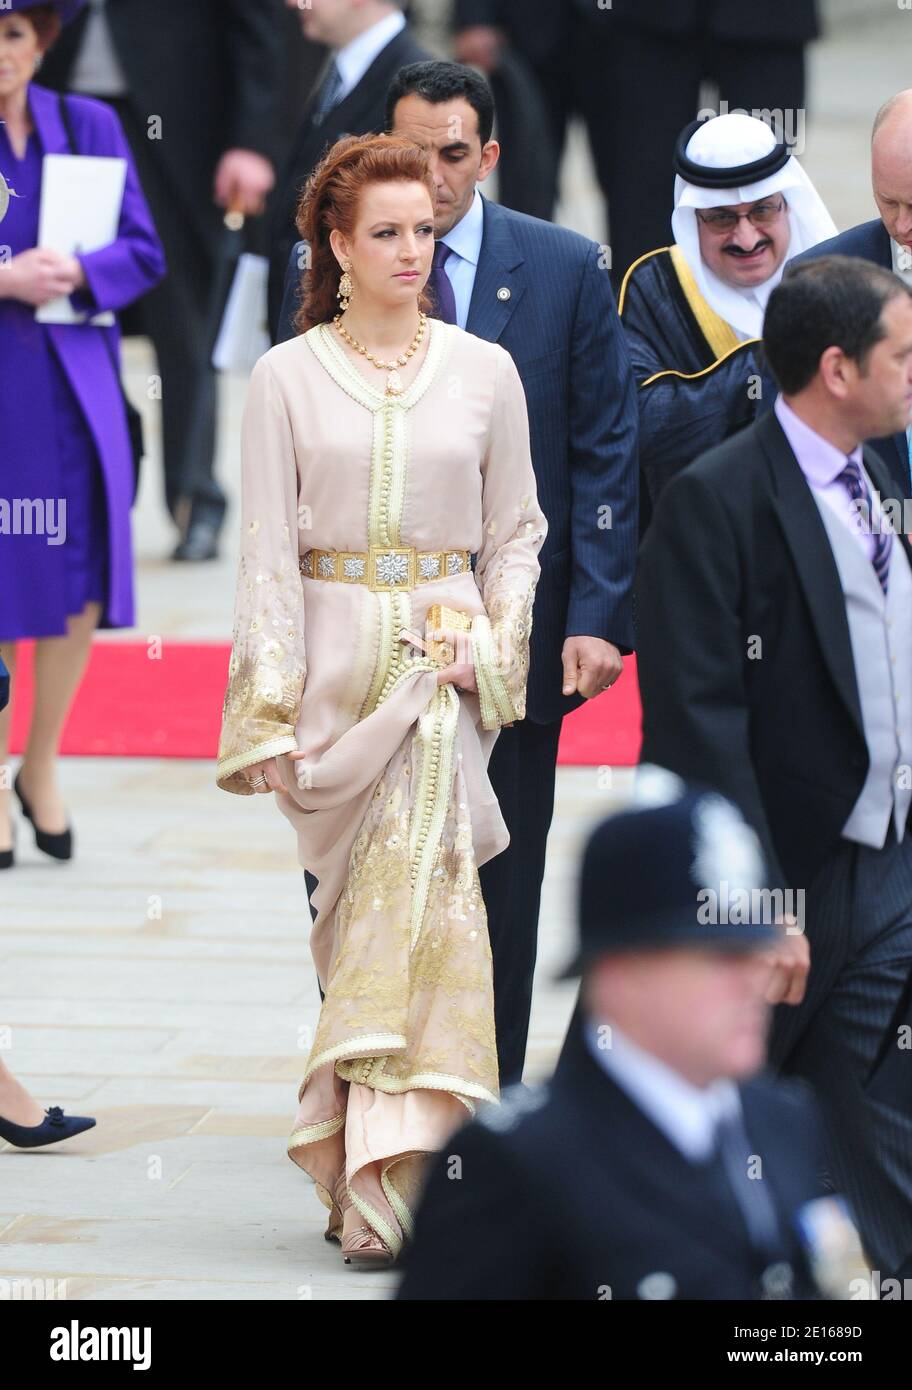 La principessa Lalla Salma del Marocco lascia l'abbazia di Westminster dopo le nozze del principe William e di Catherine Middleton, a Londra, Regno Unito, il 29 aprile 2011. Foto di Frederic Nebinger/ABACAPRESS.COM Foto Stock